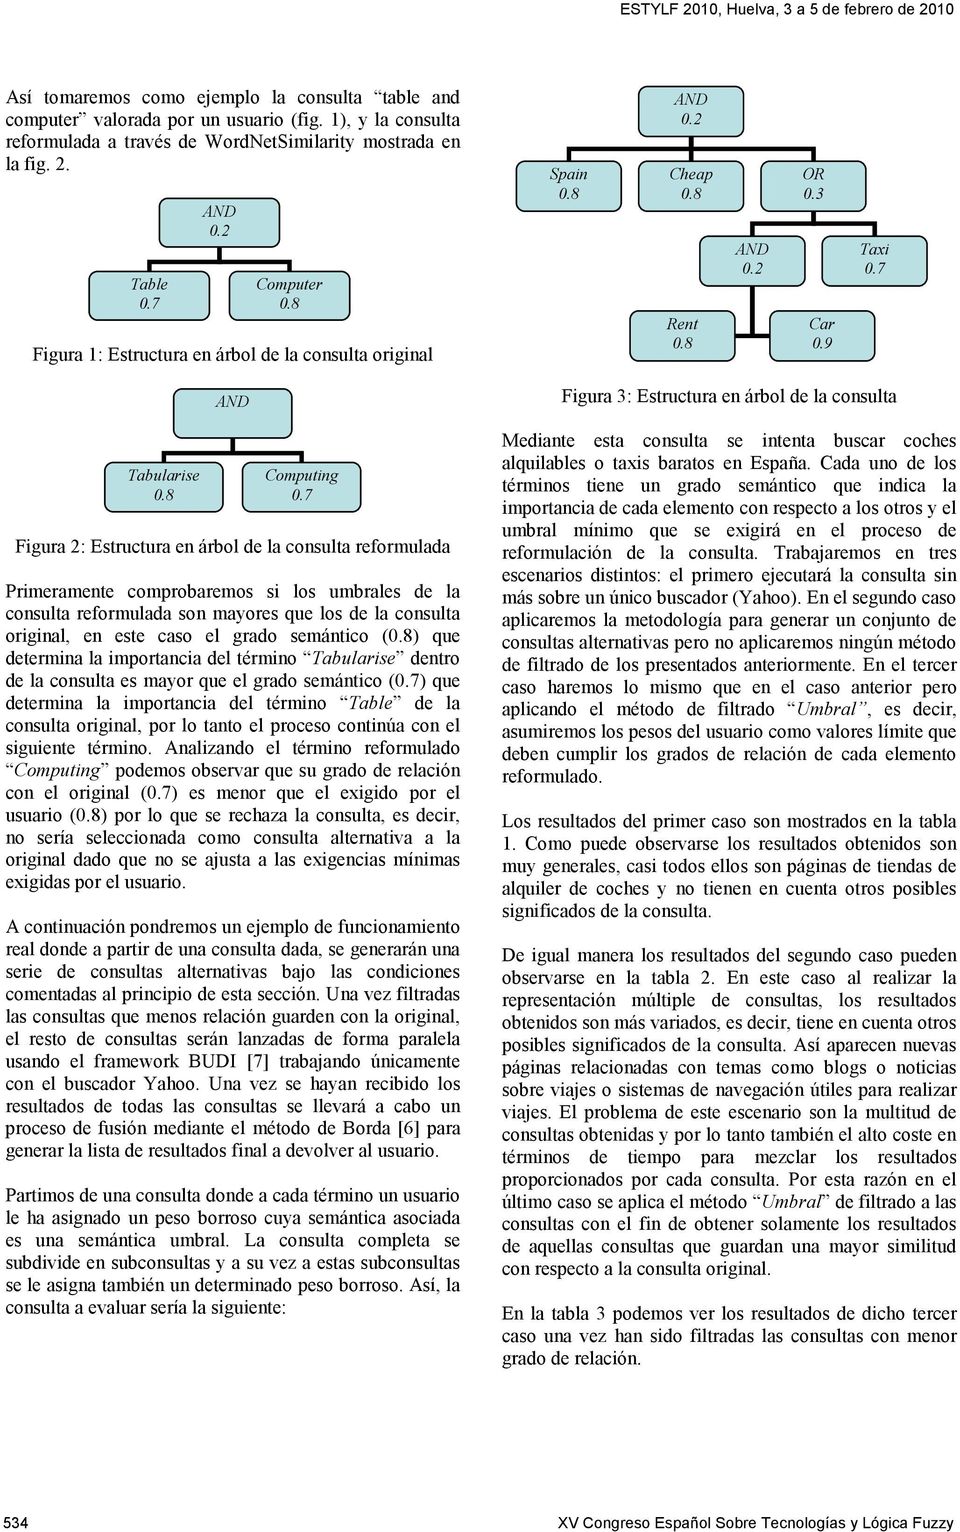 7 Figura 2: Estructura en árbol de la consulta reformulada Primeramente comprobaremos si los umbrales de la consulta reformulada son mayores que los de la consulta original, en este caso el grado